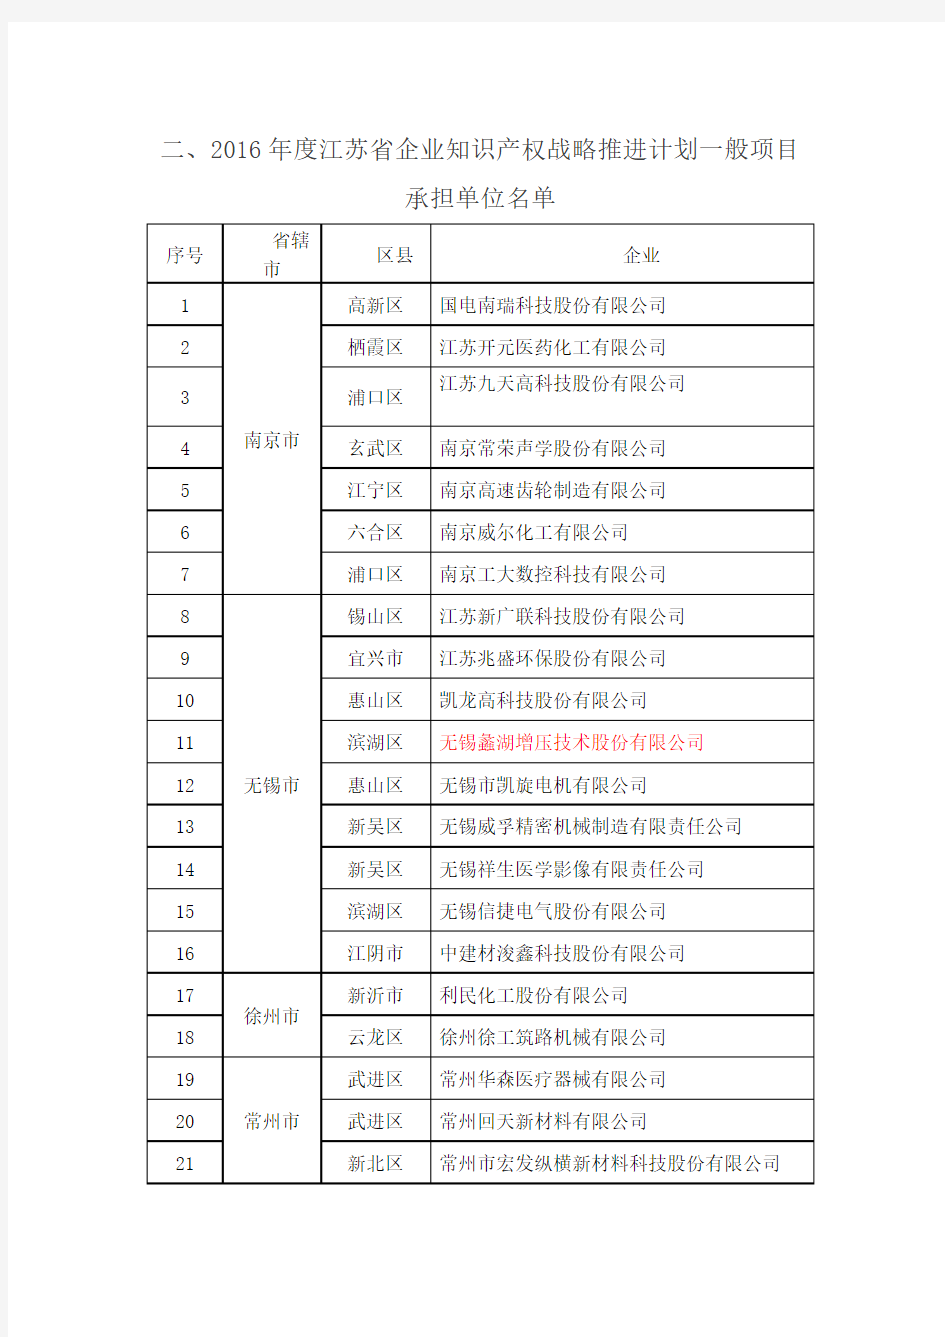 2016年江苏省知识产权战略推进企业名单